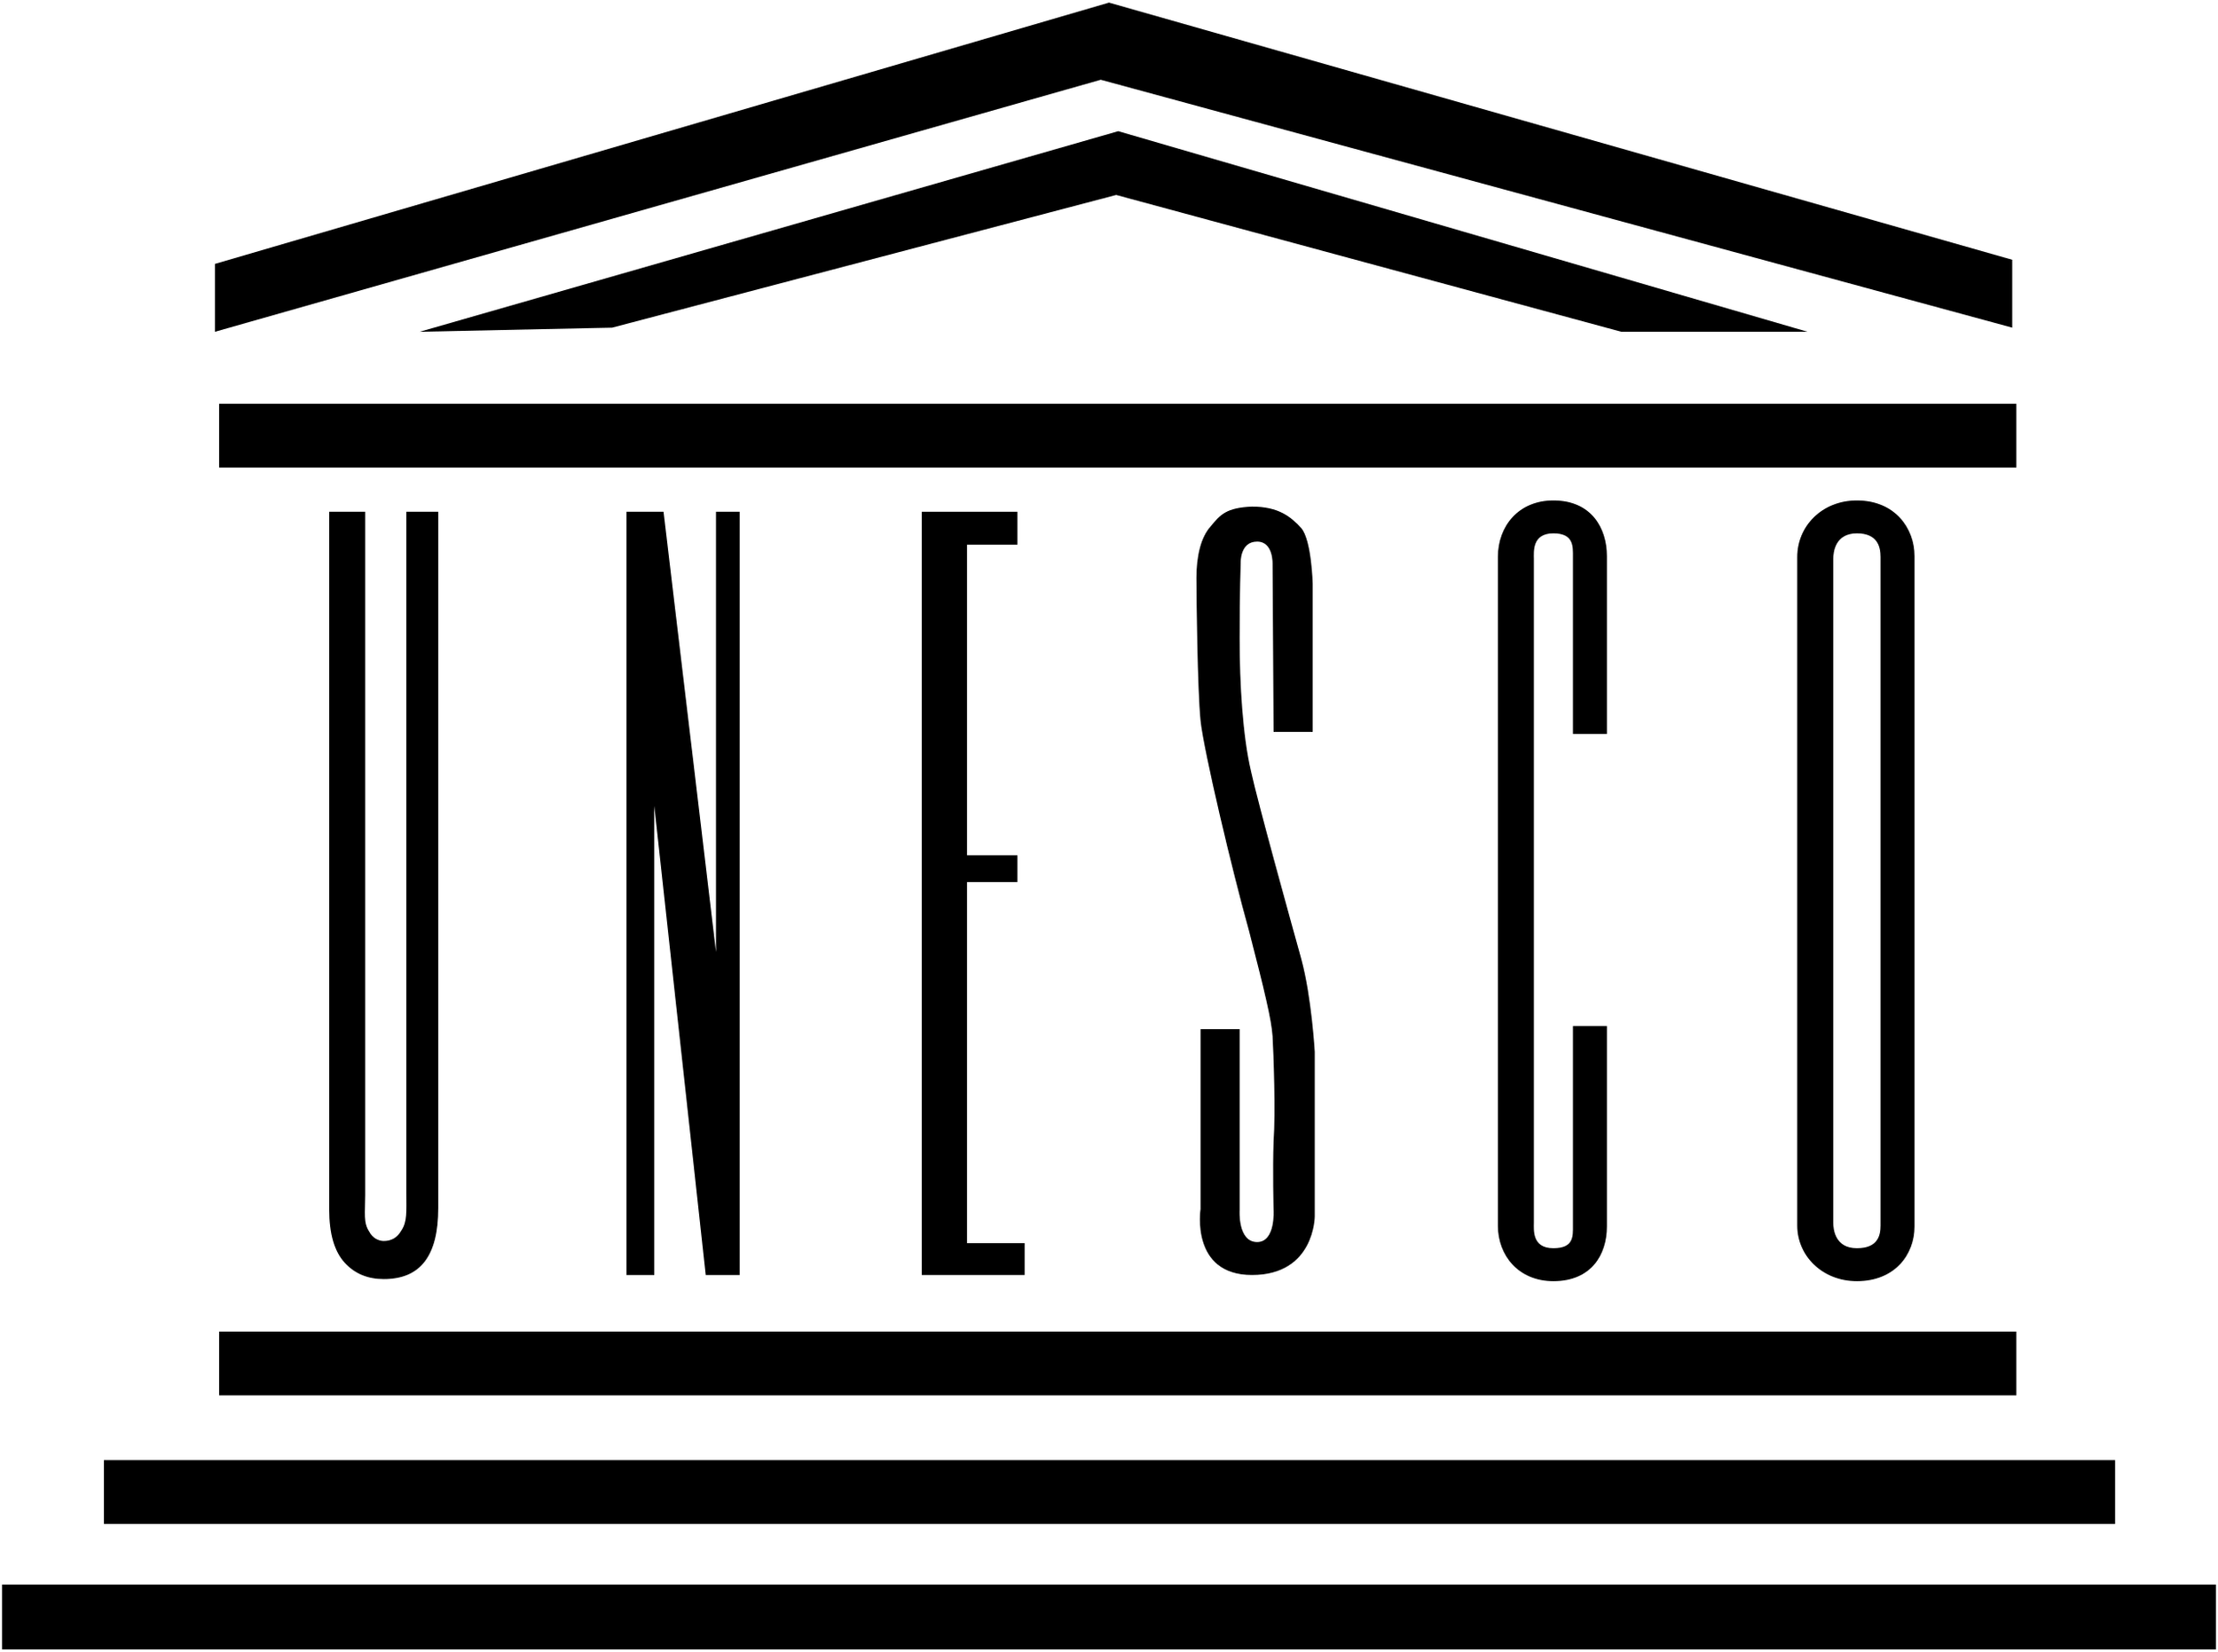 2560px-UNESCO_logo.png